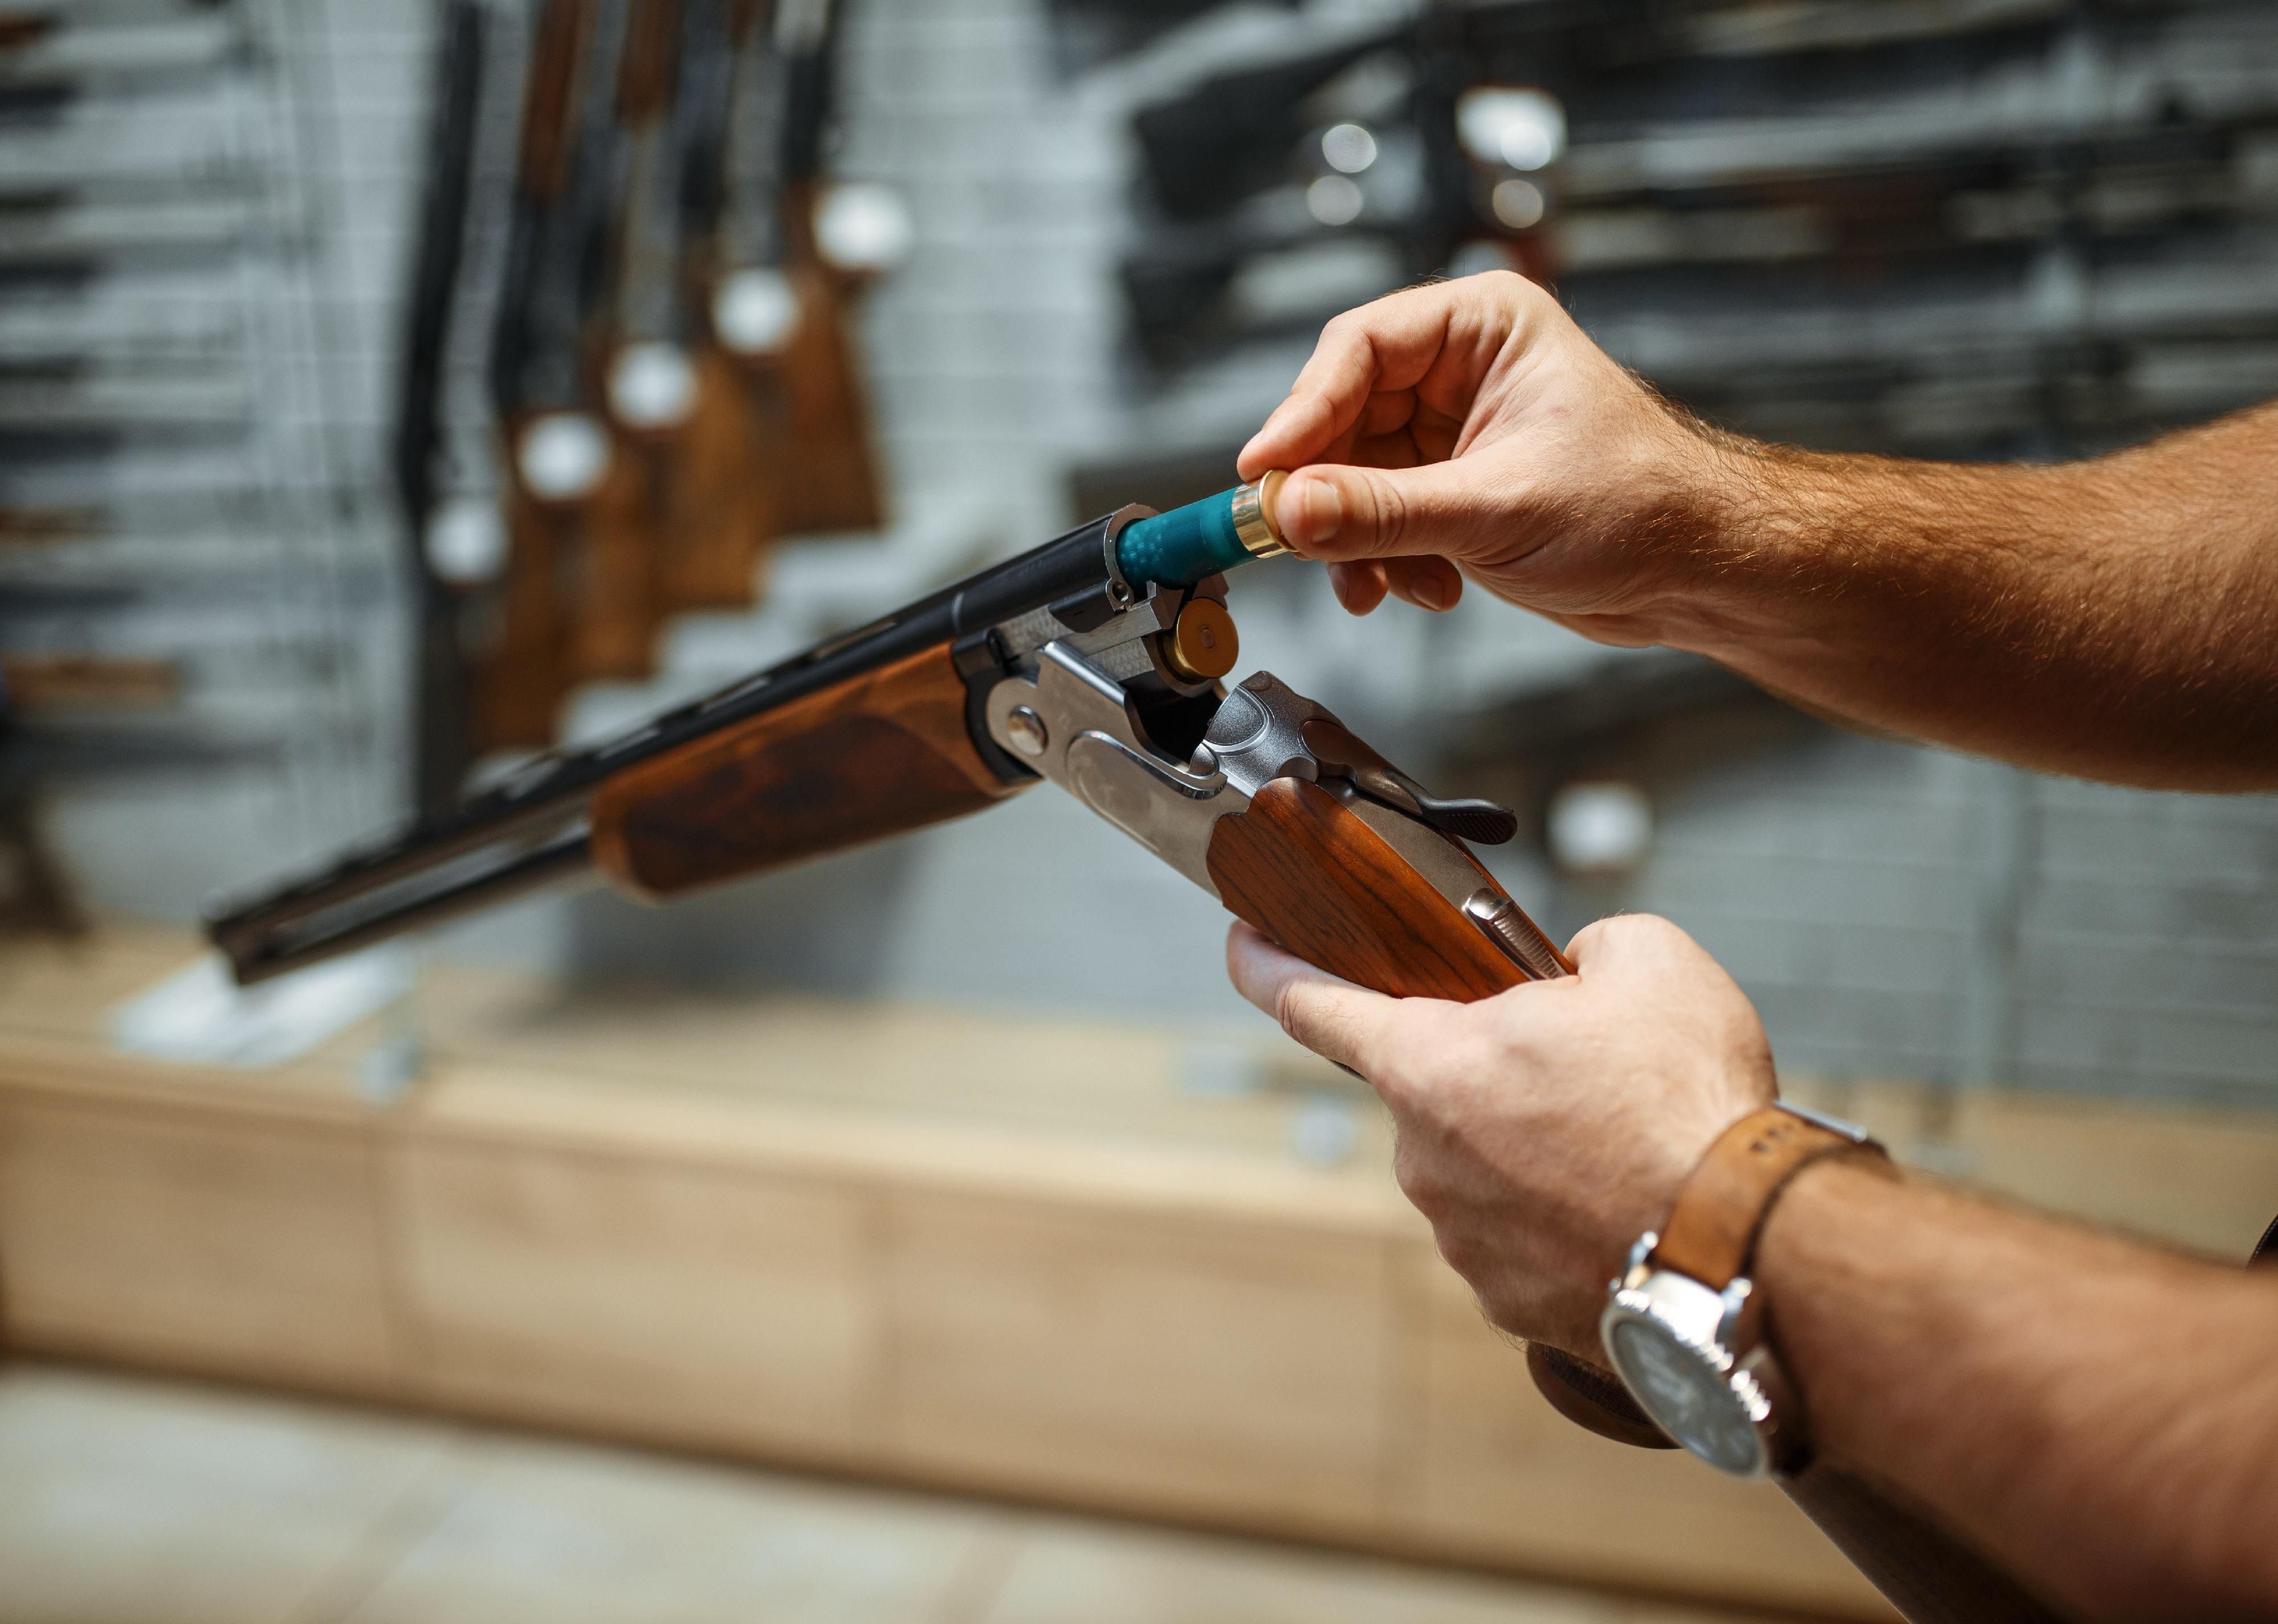 Person loads a rifle in a gun shop.